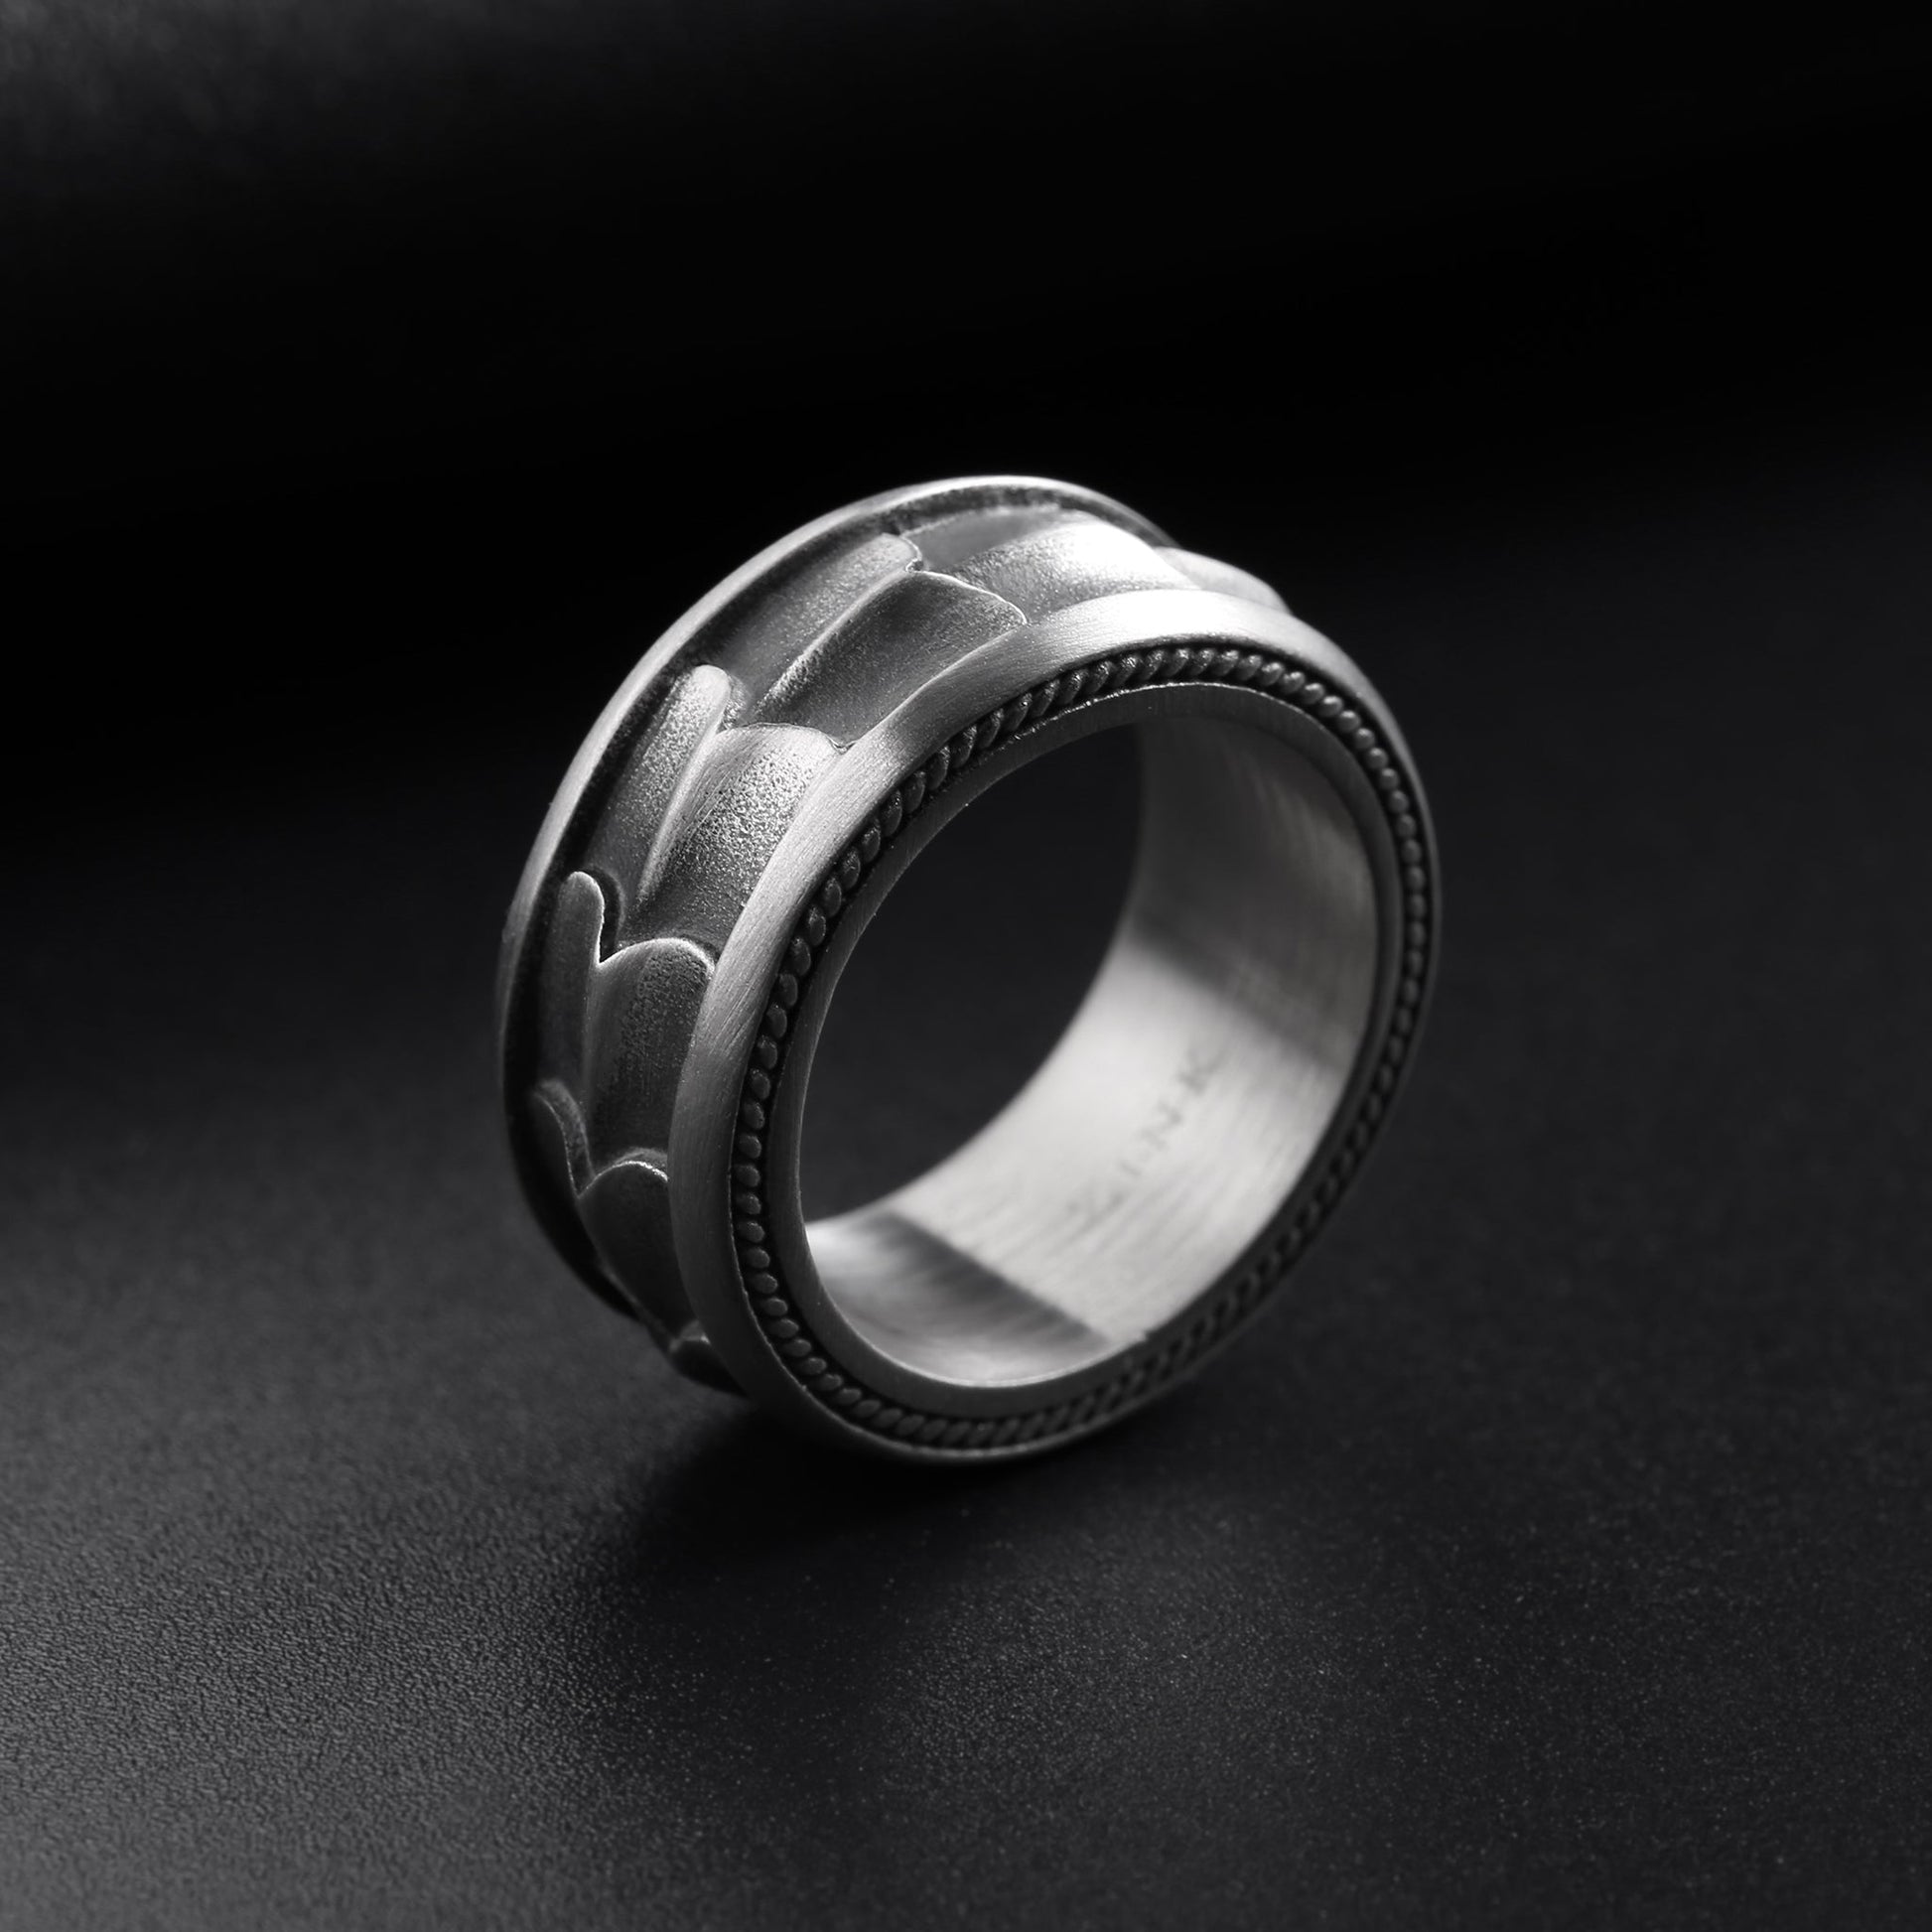 ZJRG028U ZINK Men's Ring